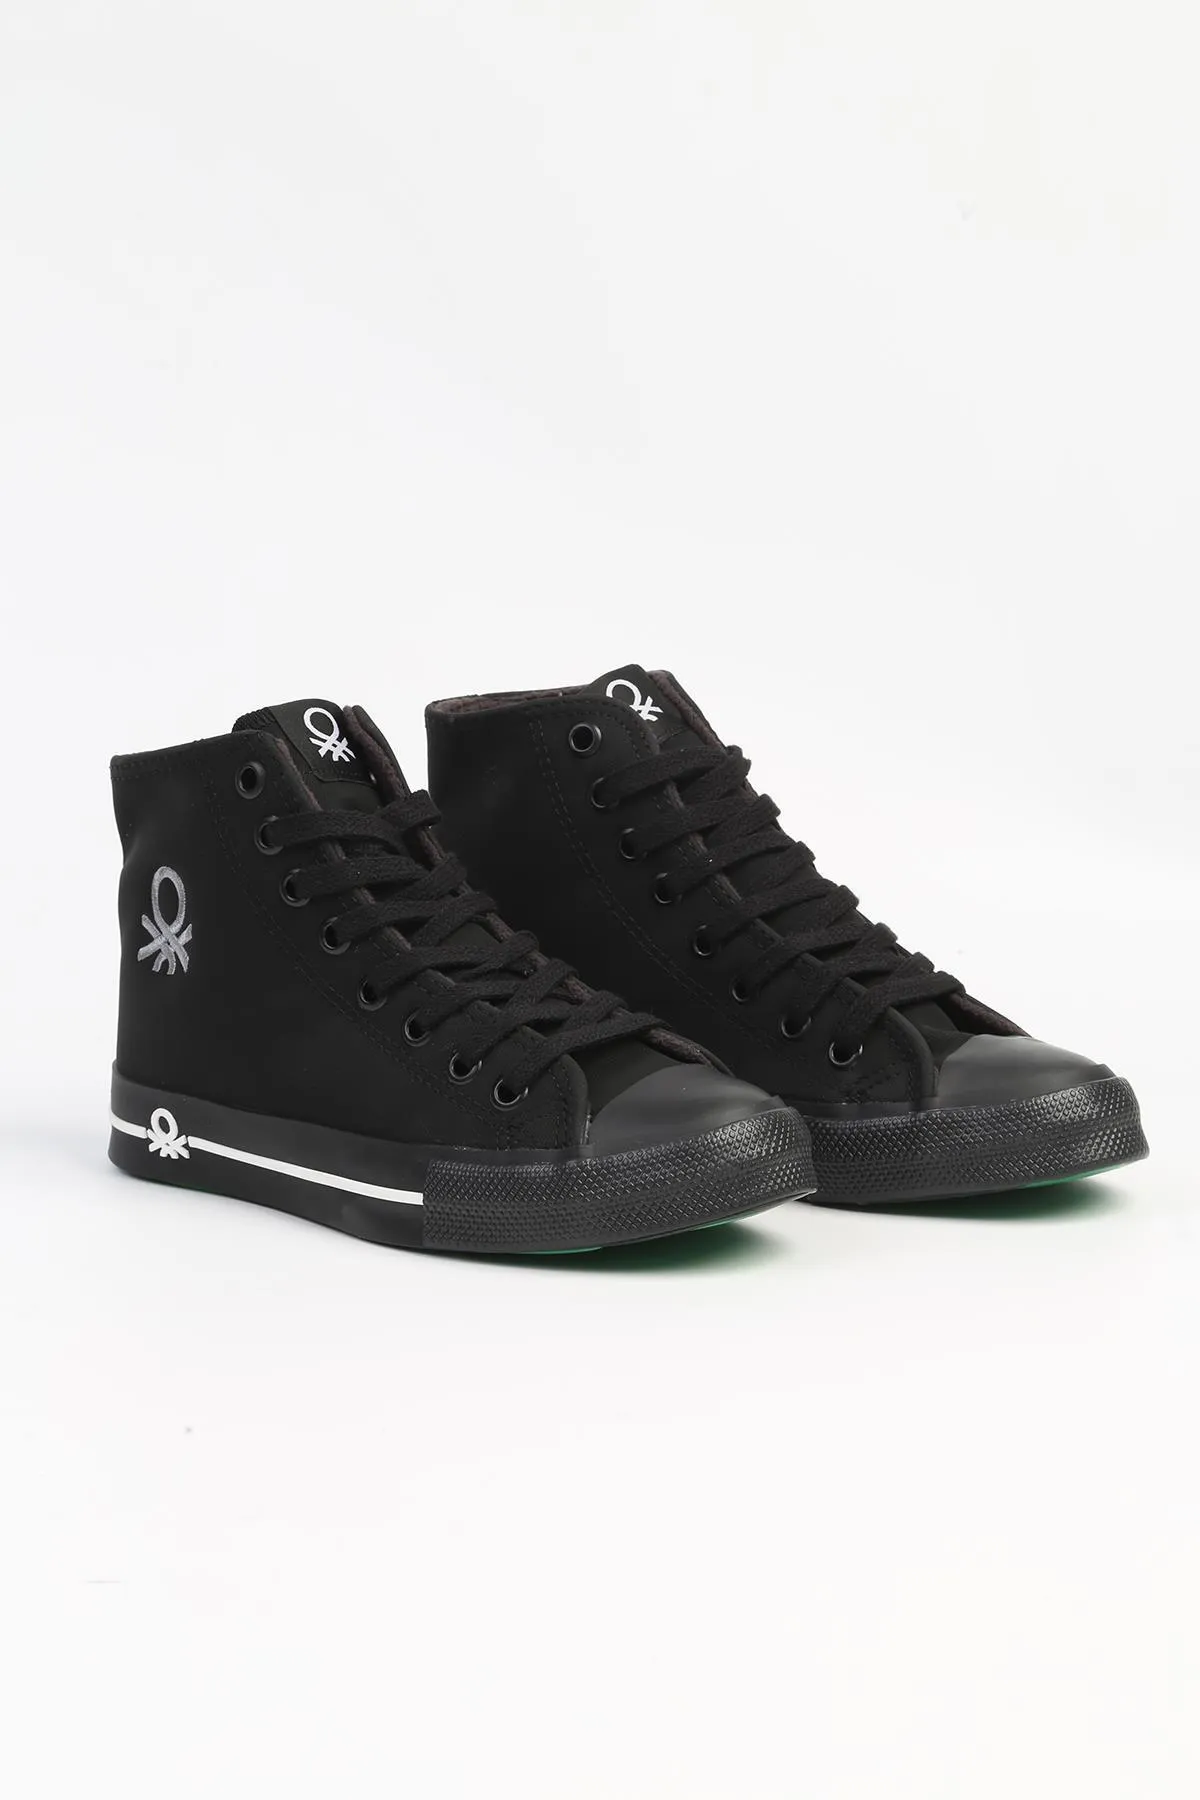 Kadın Spor Ayakkabı-BN-31052-Siyah - Thumbnail